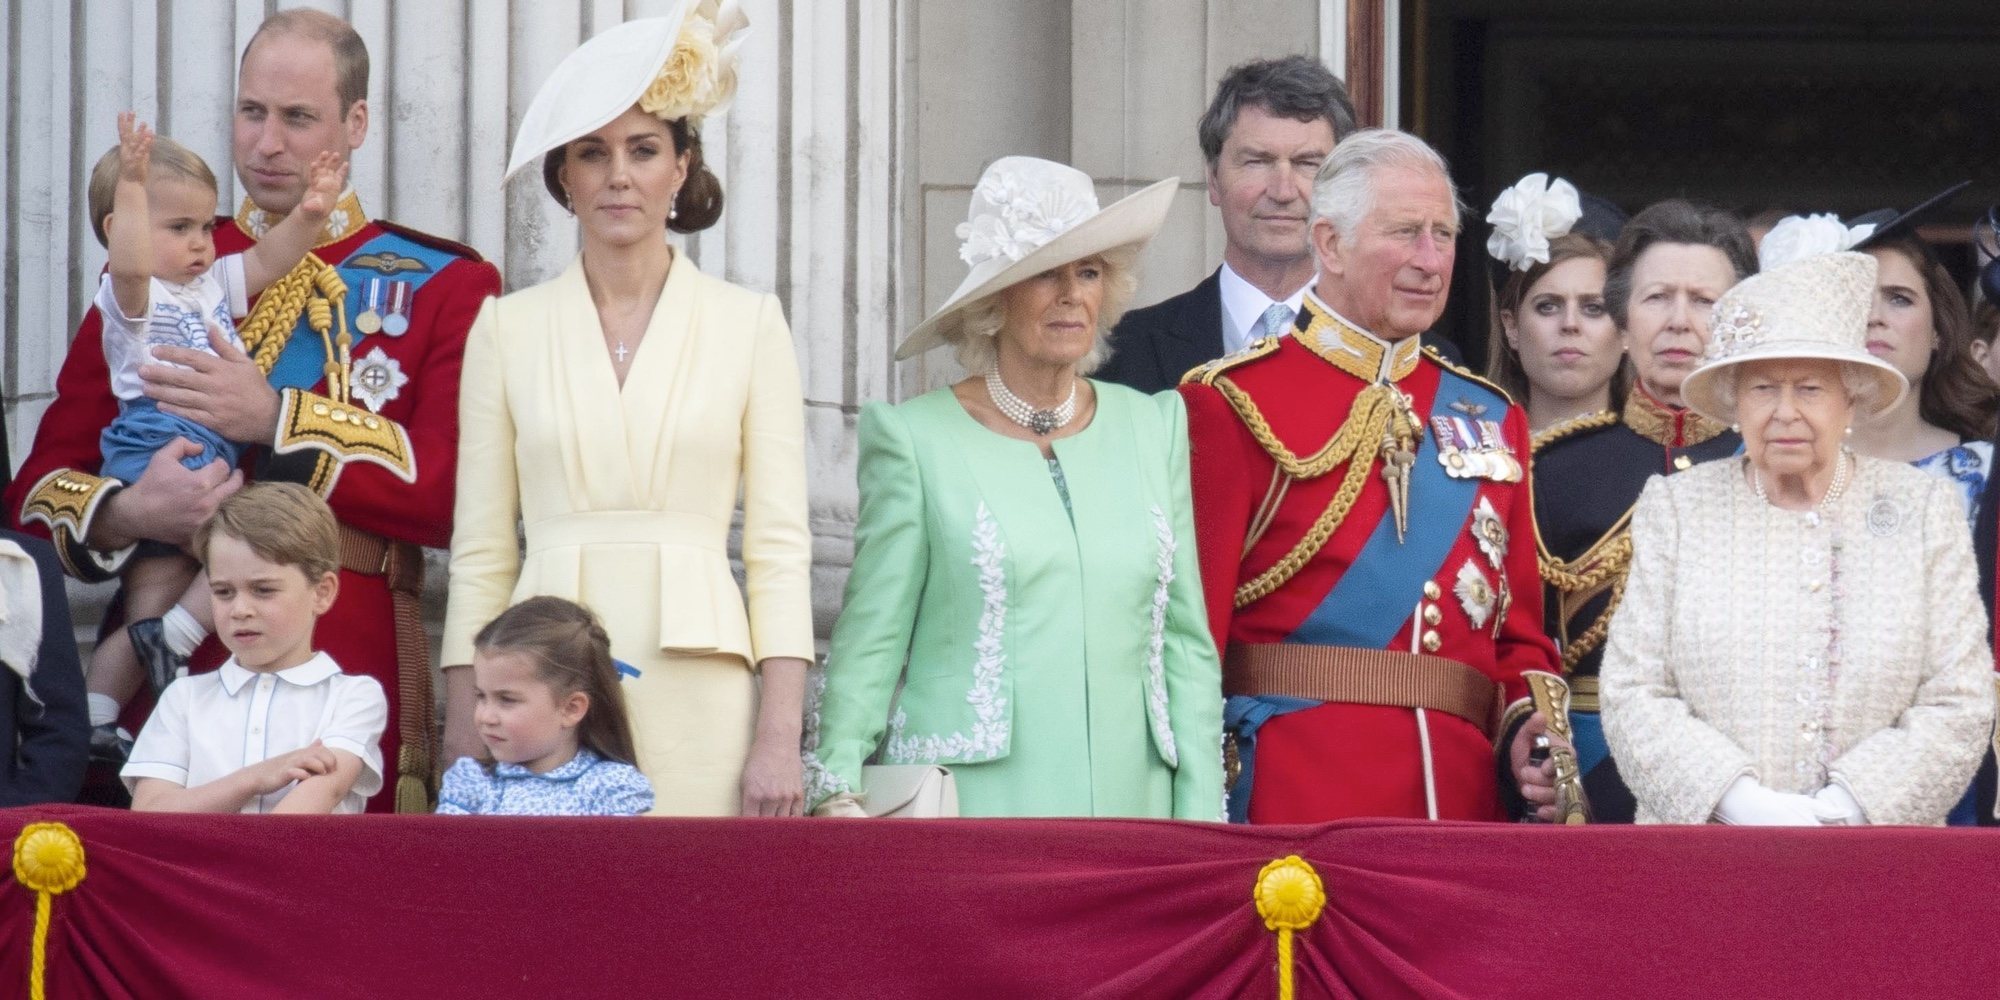 La afición del Príncipe Jorge, la Princesa Carlota y el Príncipe Luis que enorgullece a la Reina Isabel